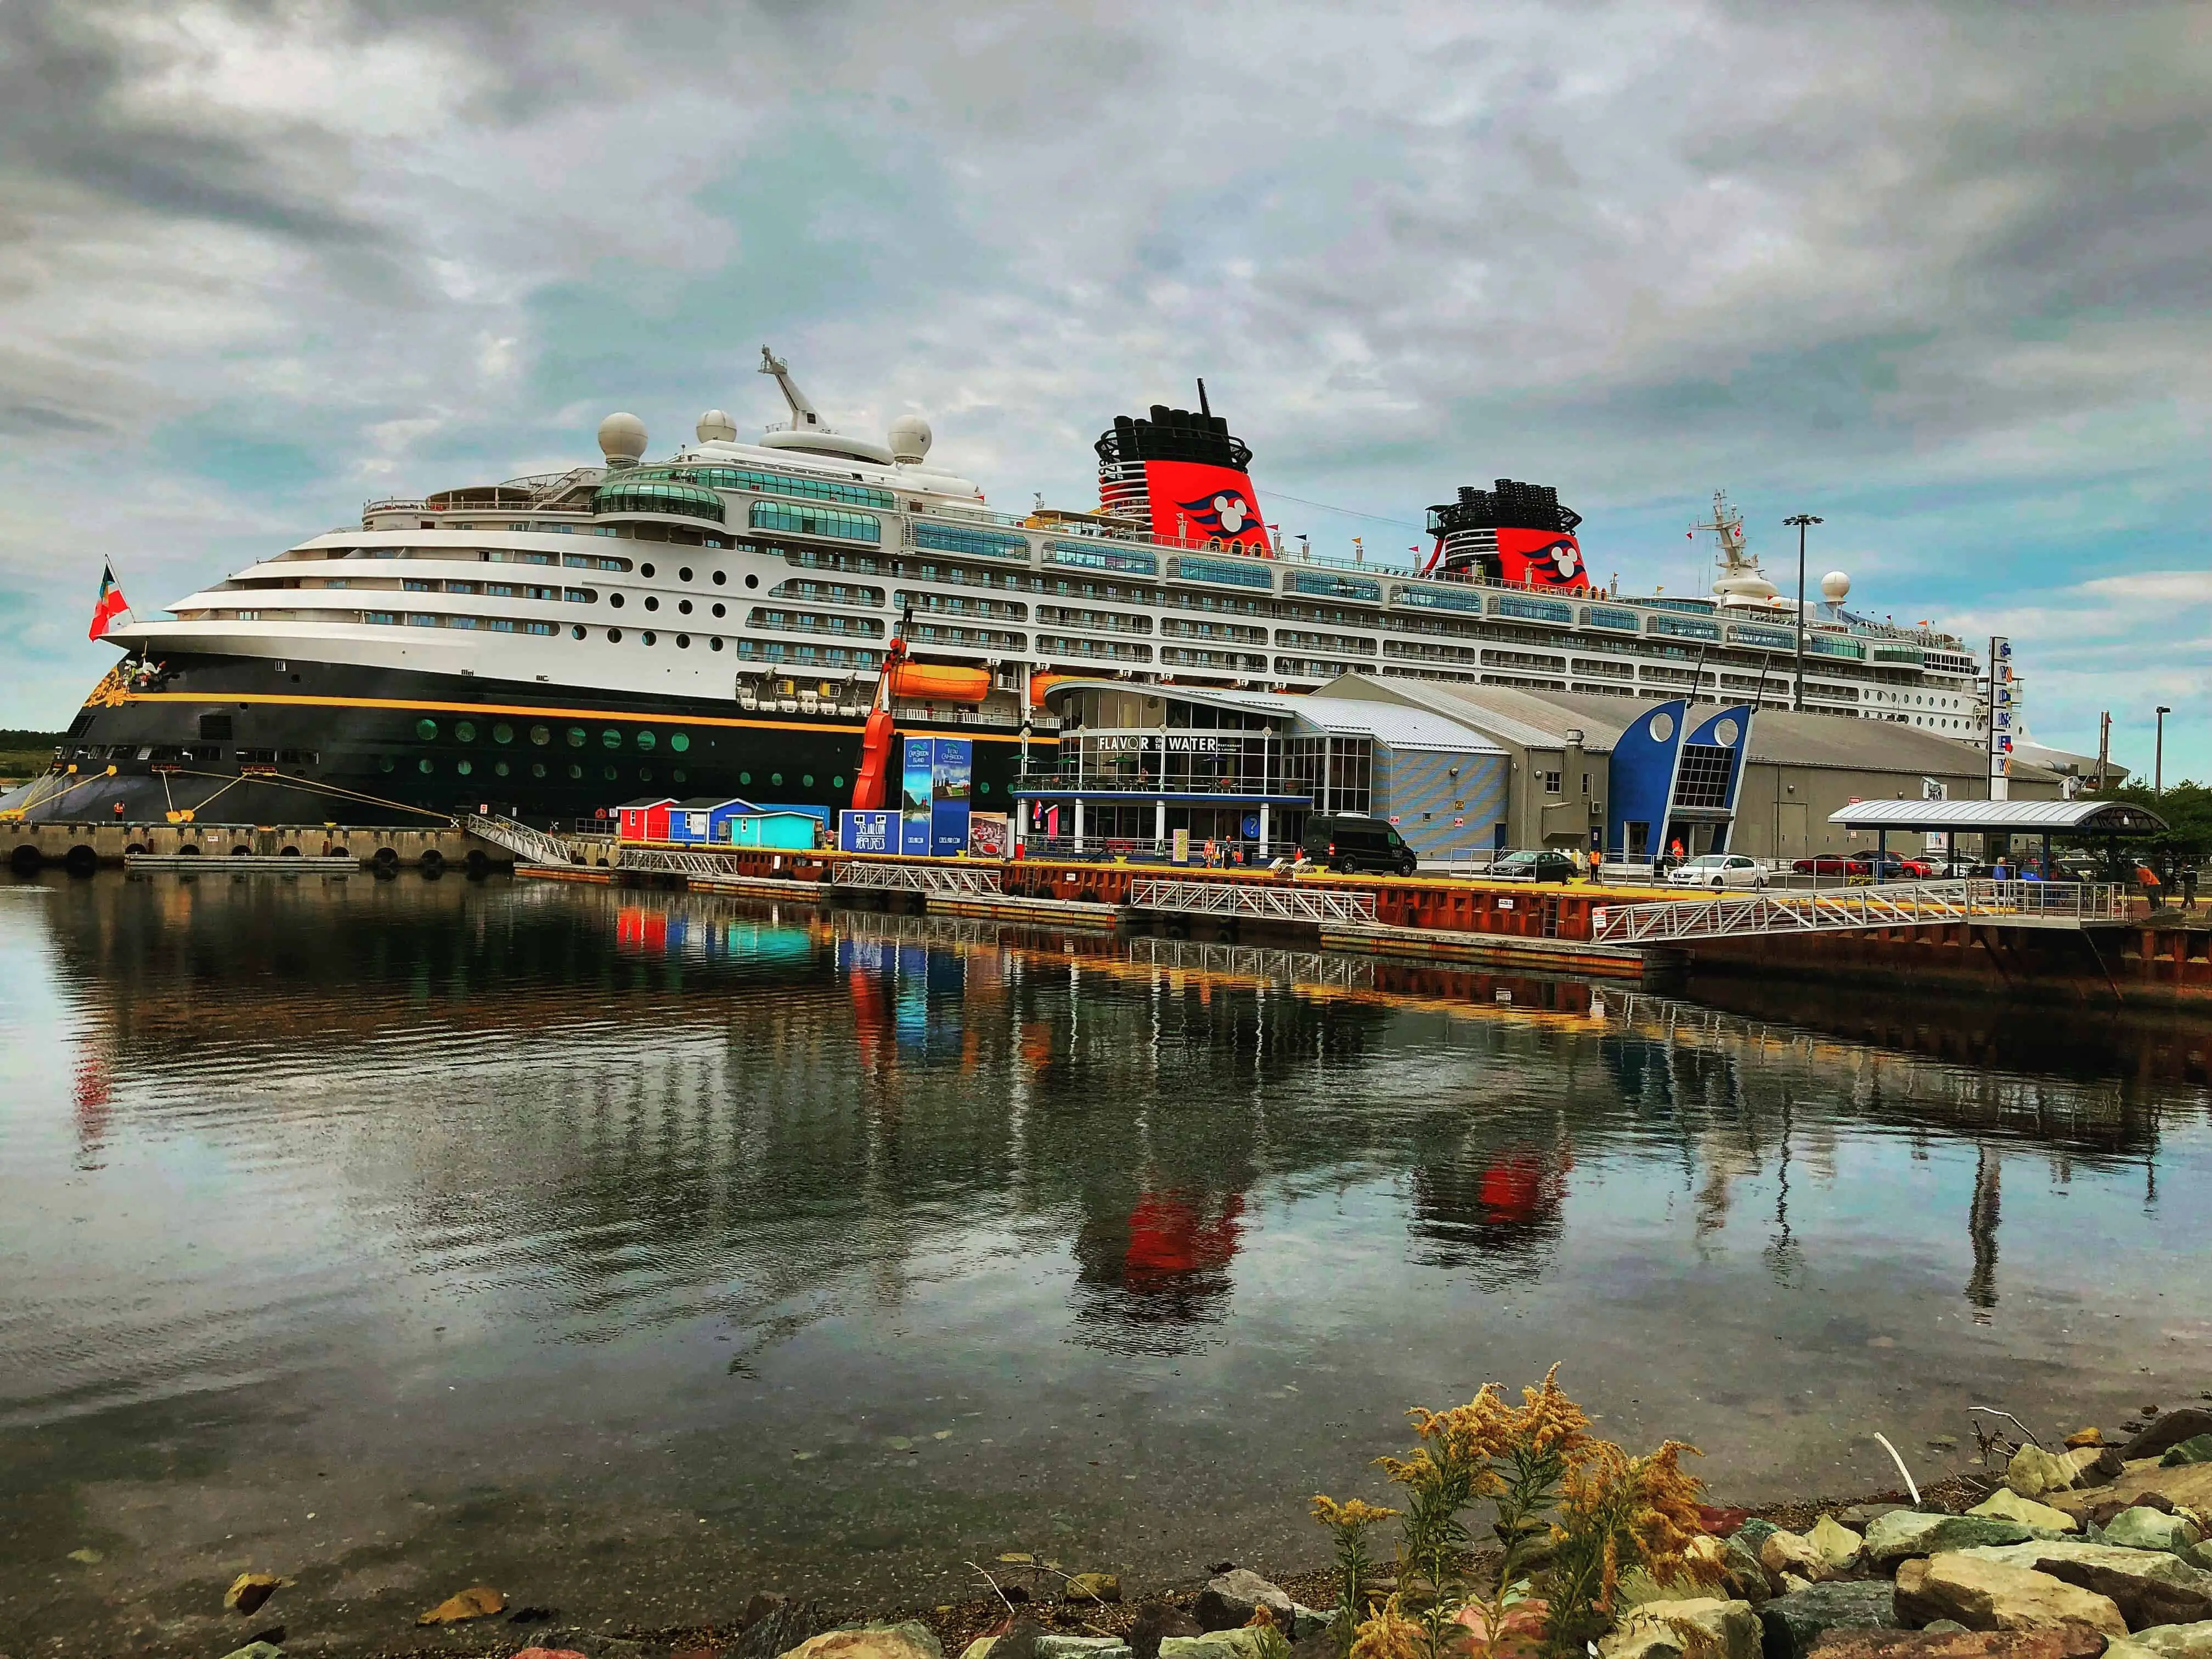 Disney Magic at port in Sydney Nova Scotia